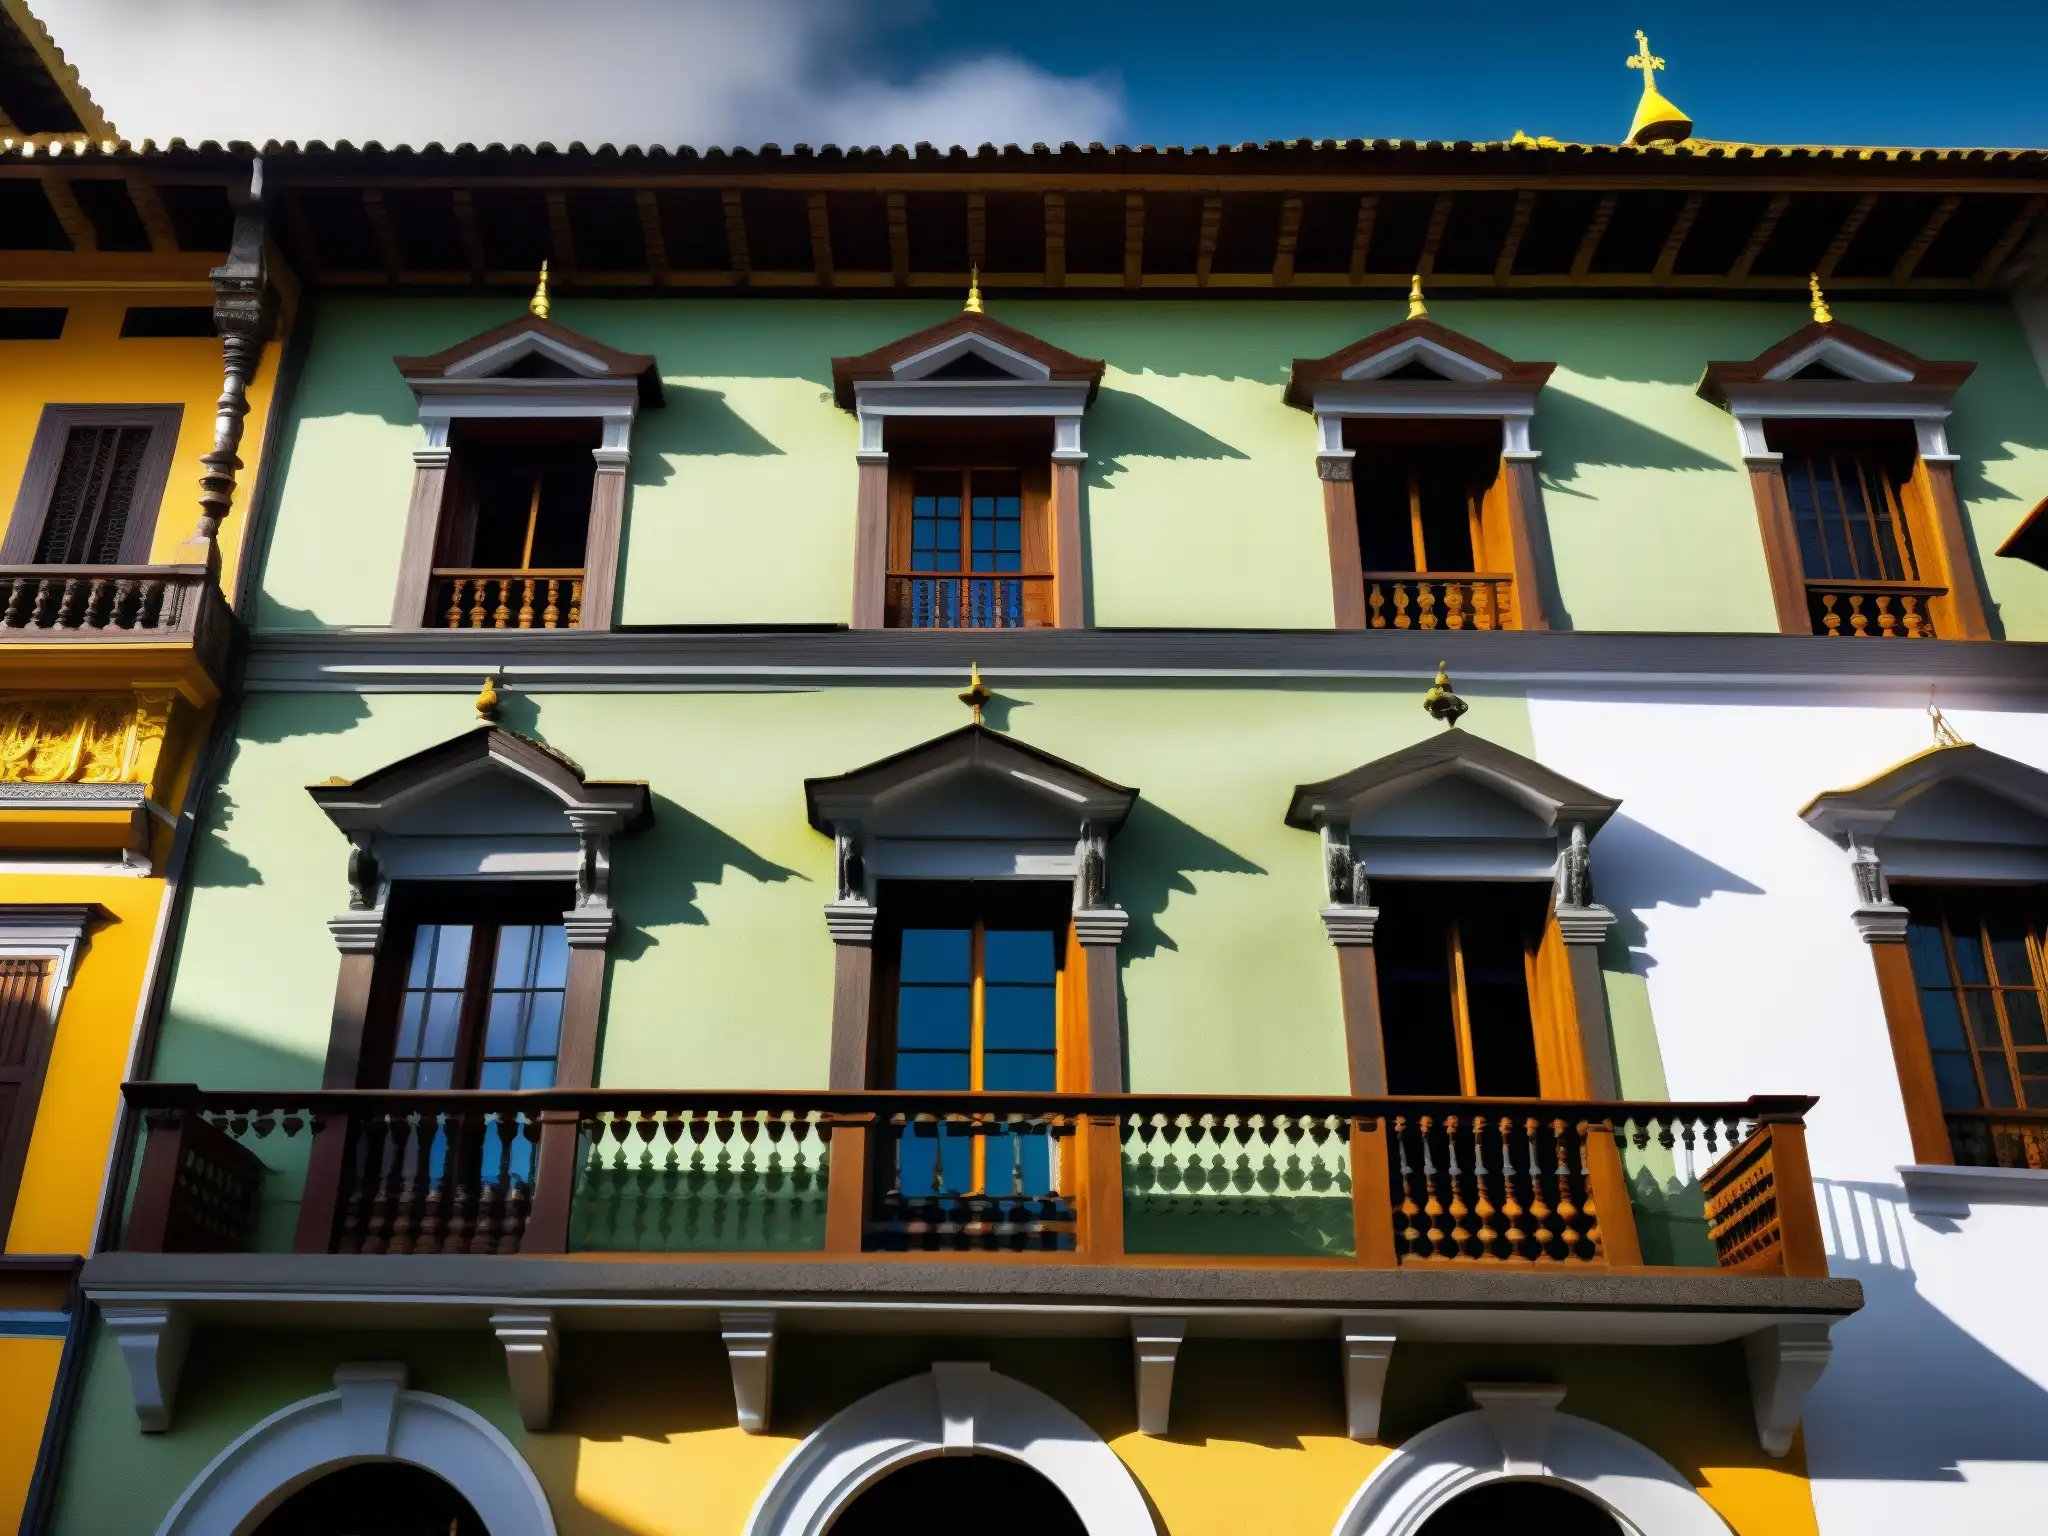 Detalle arquitectónico de La Casa de los Espejos en Quito, mostrando su atmósfera fantasmagórica con juego de luces y sombras